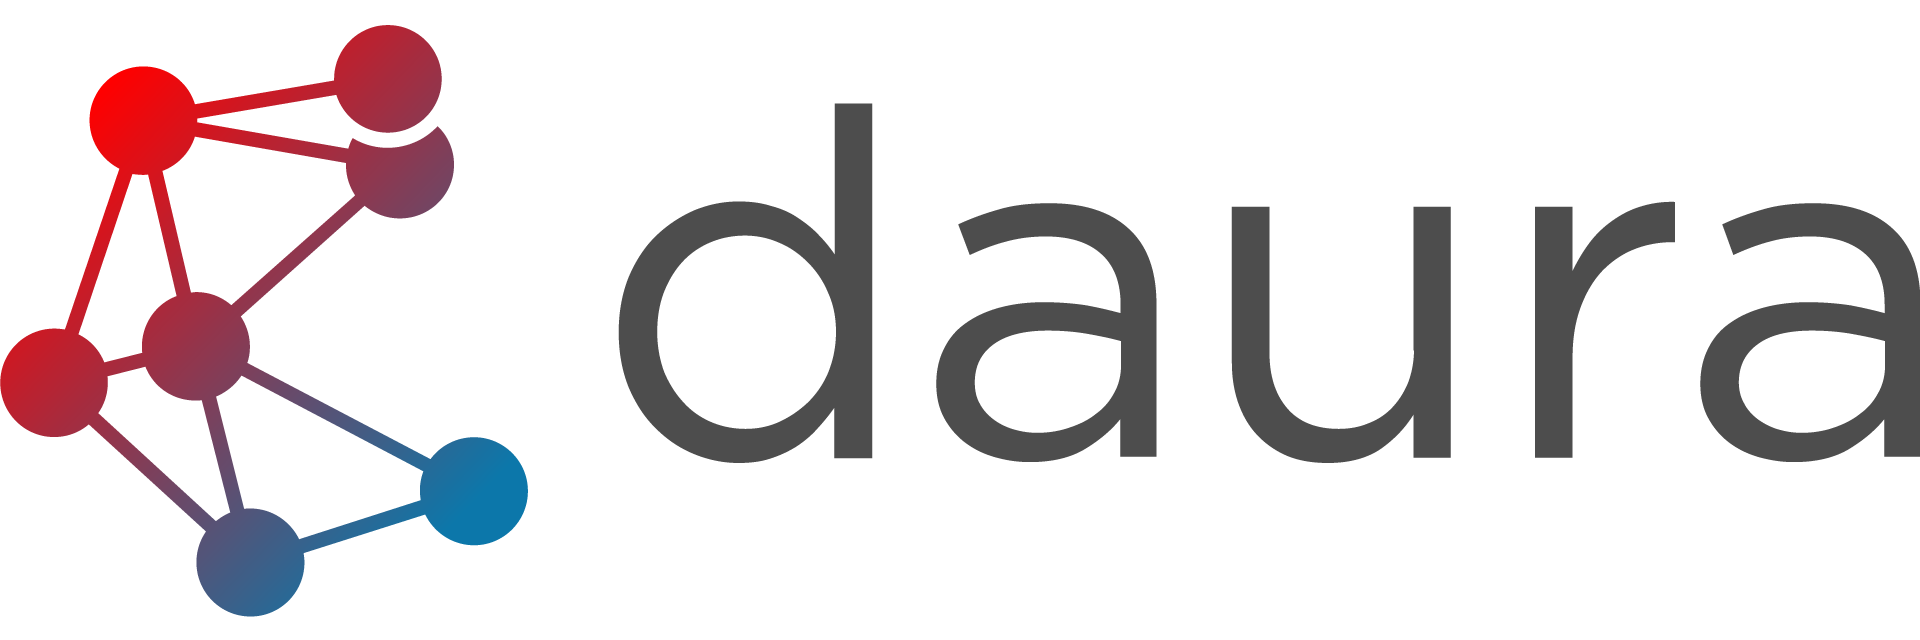 daura-logo-font-black-2